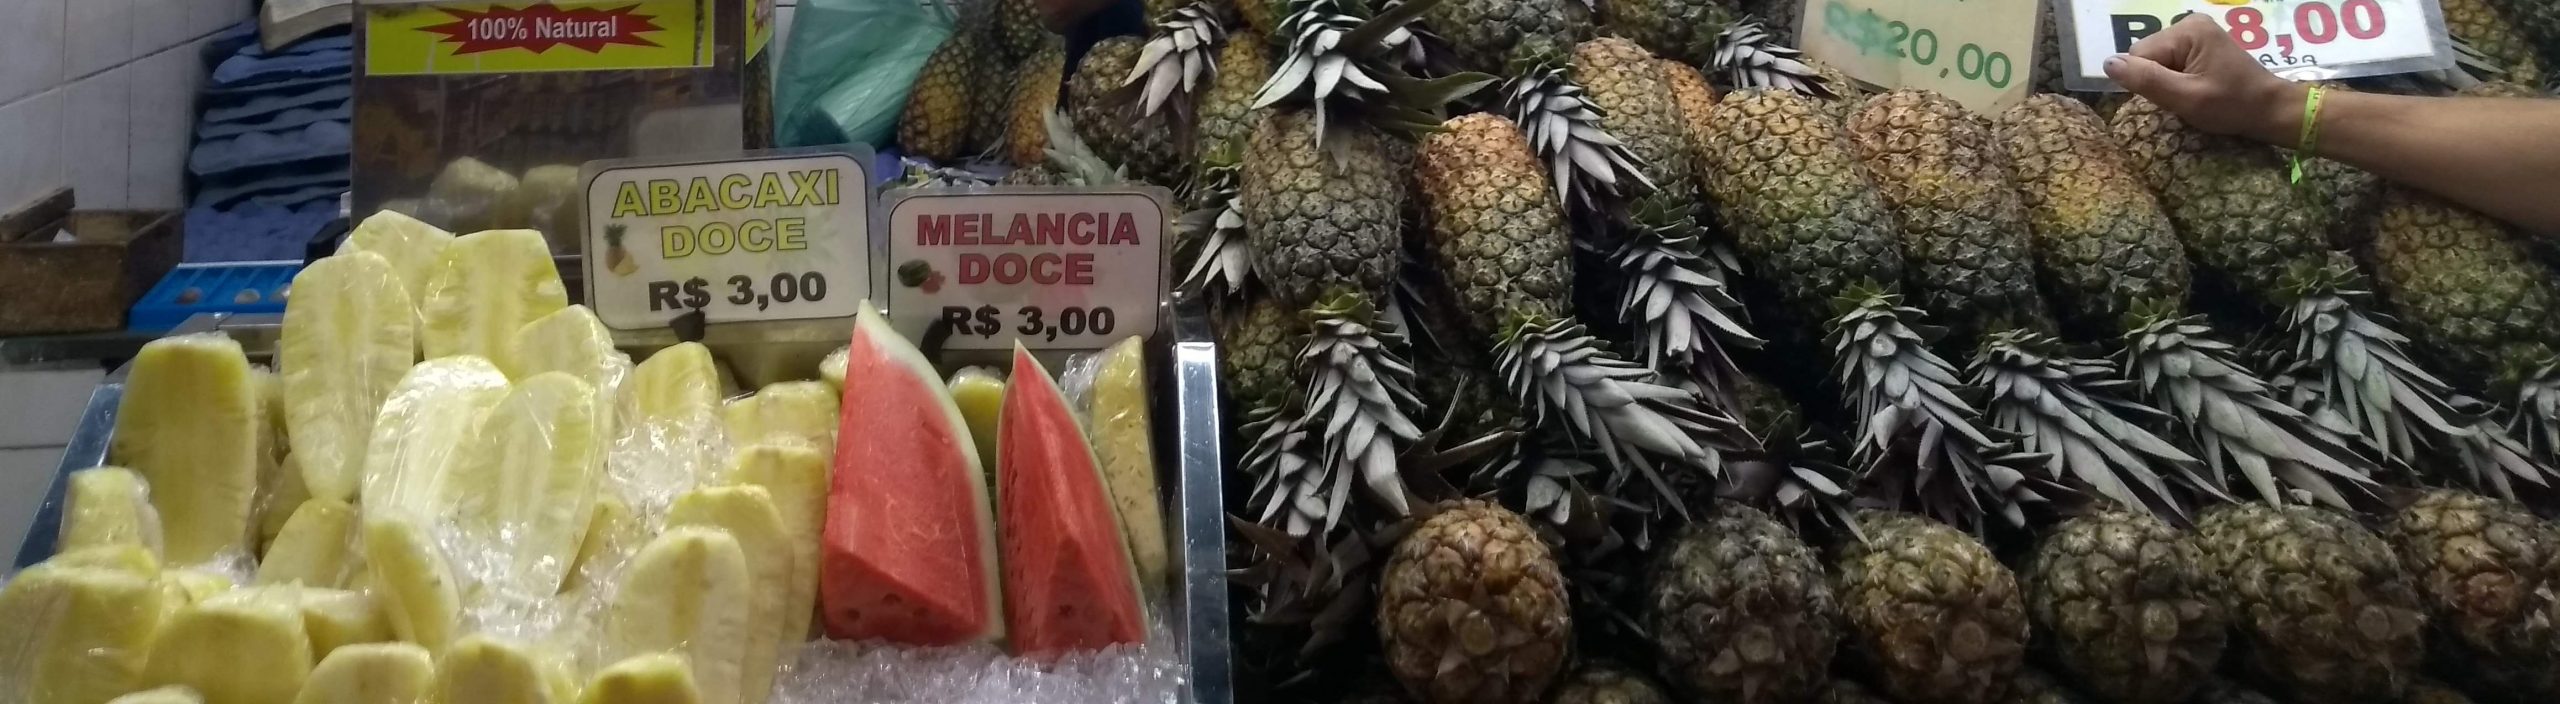 Descascando o abacaxi no Mercado Central